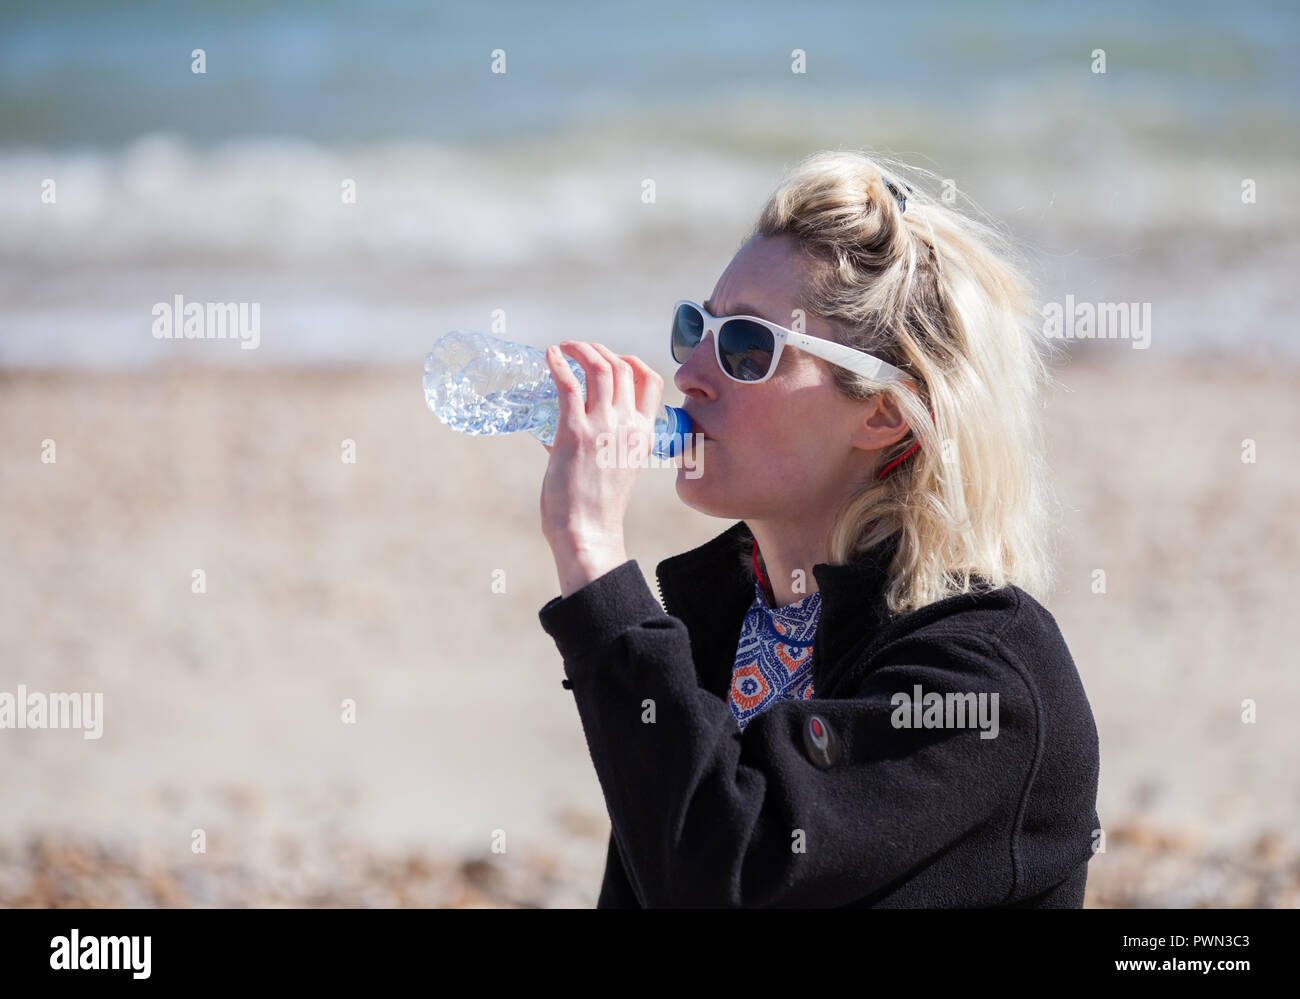 Frau trinkt aus der Flasche Wasser am Strand Stockfoto